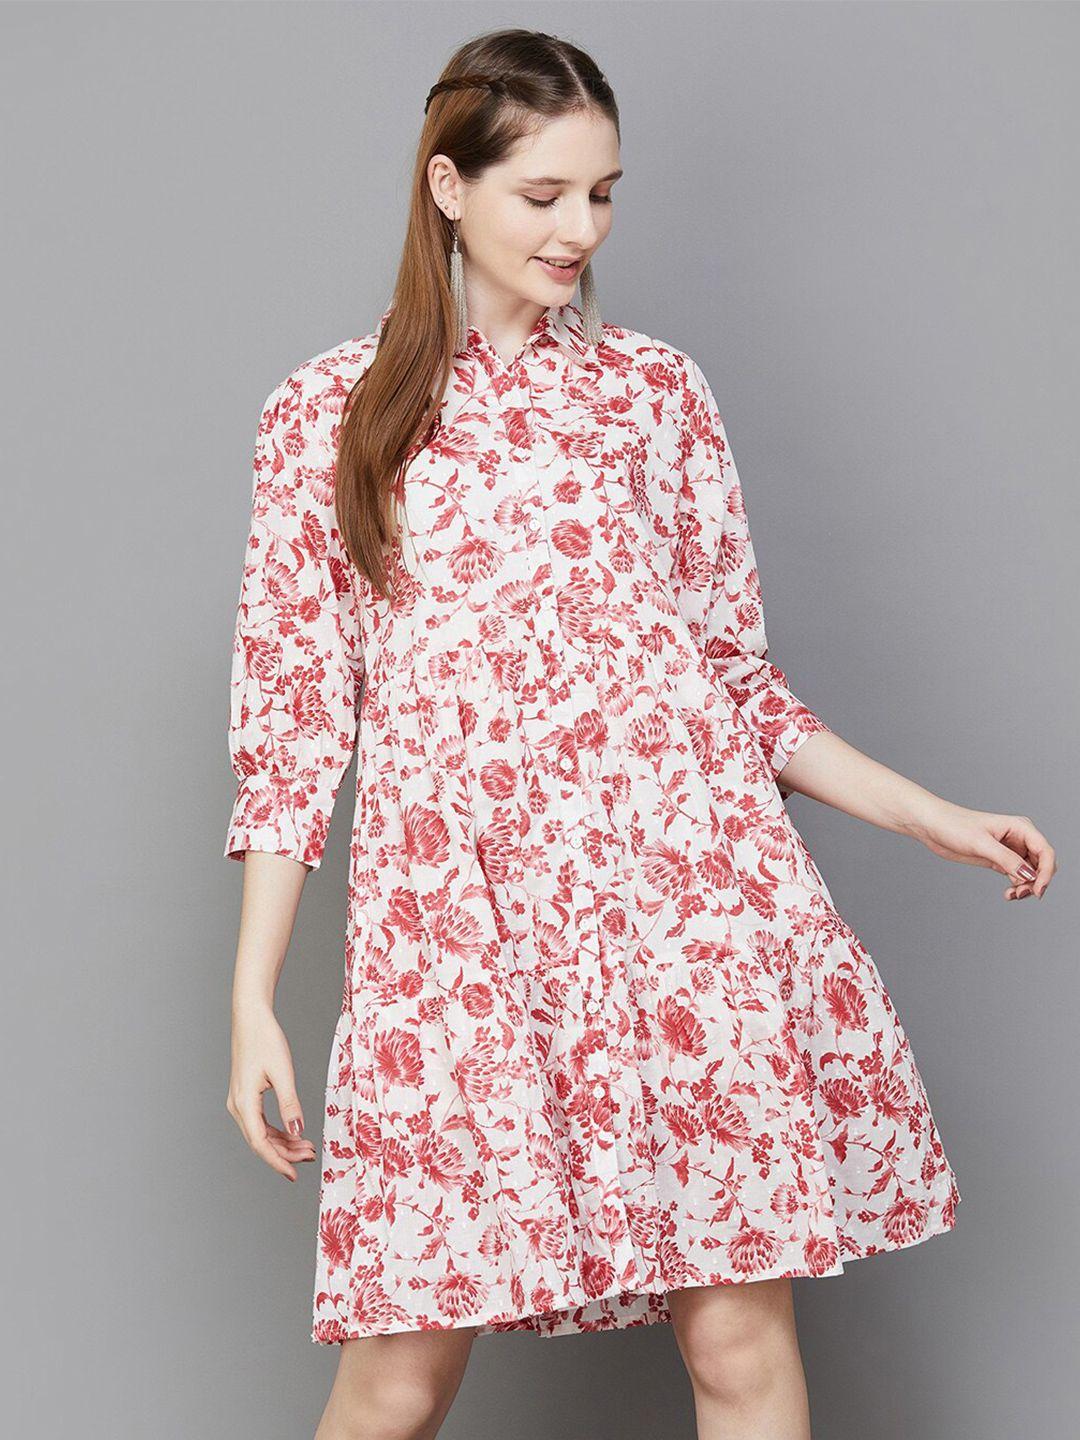 colour me by melange floral print a-line dress